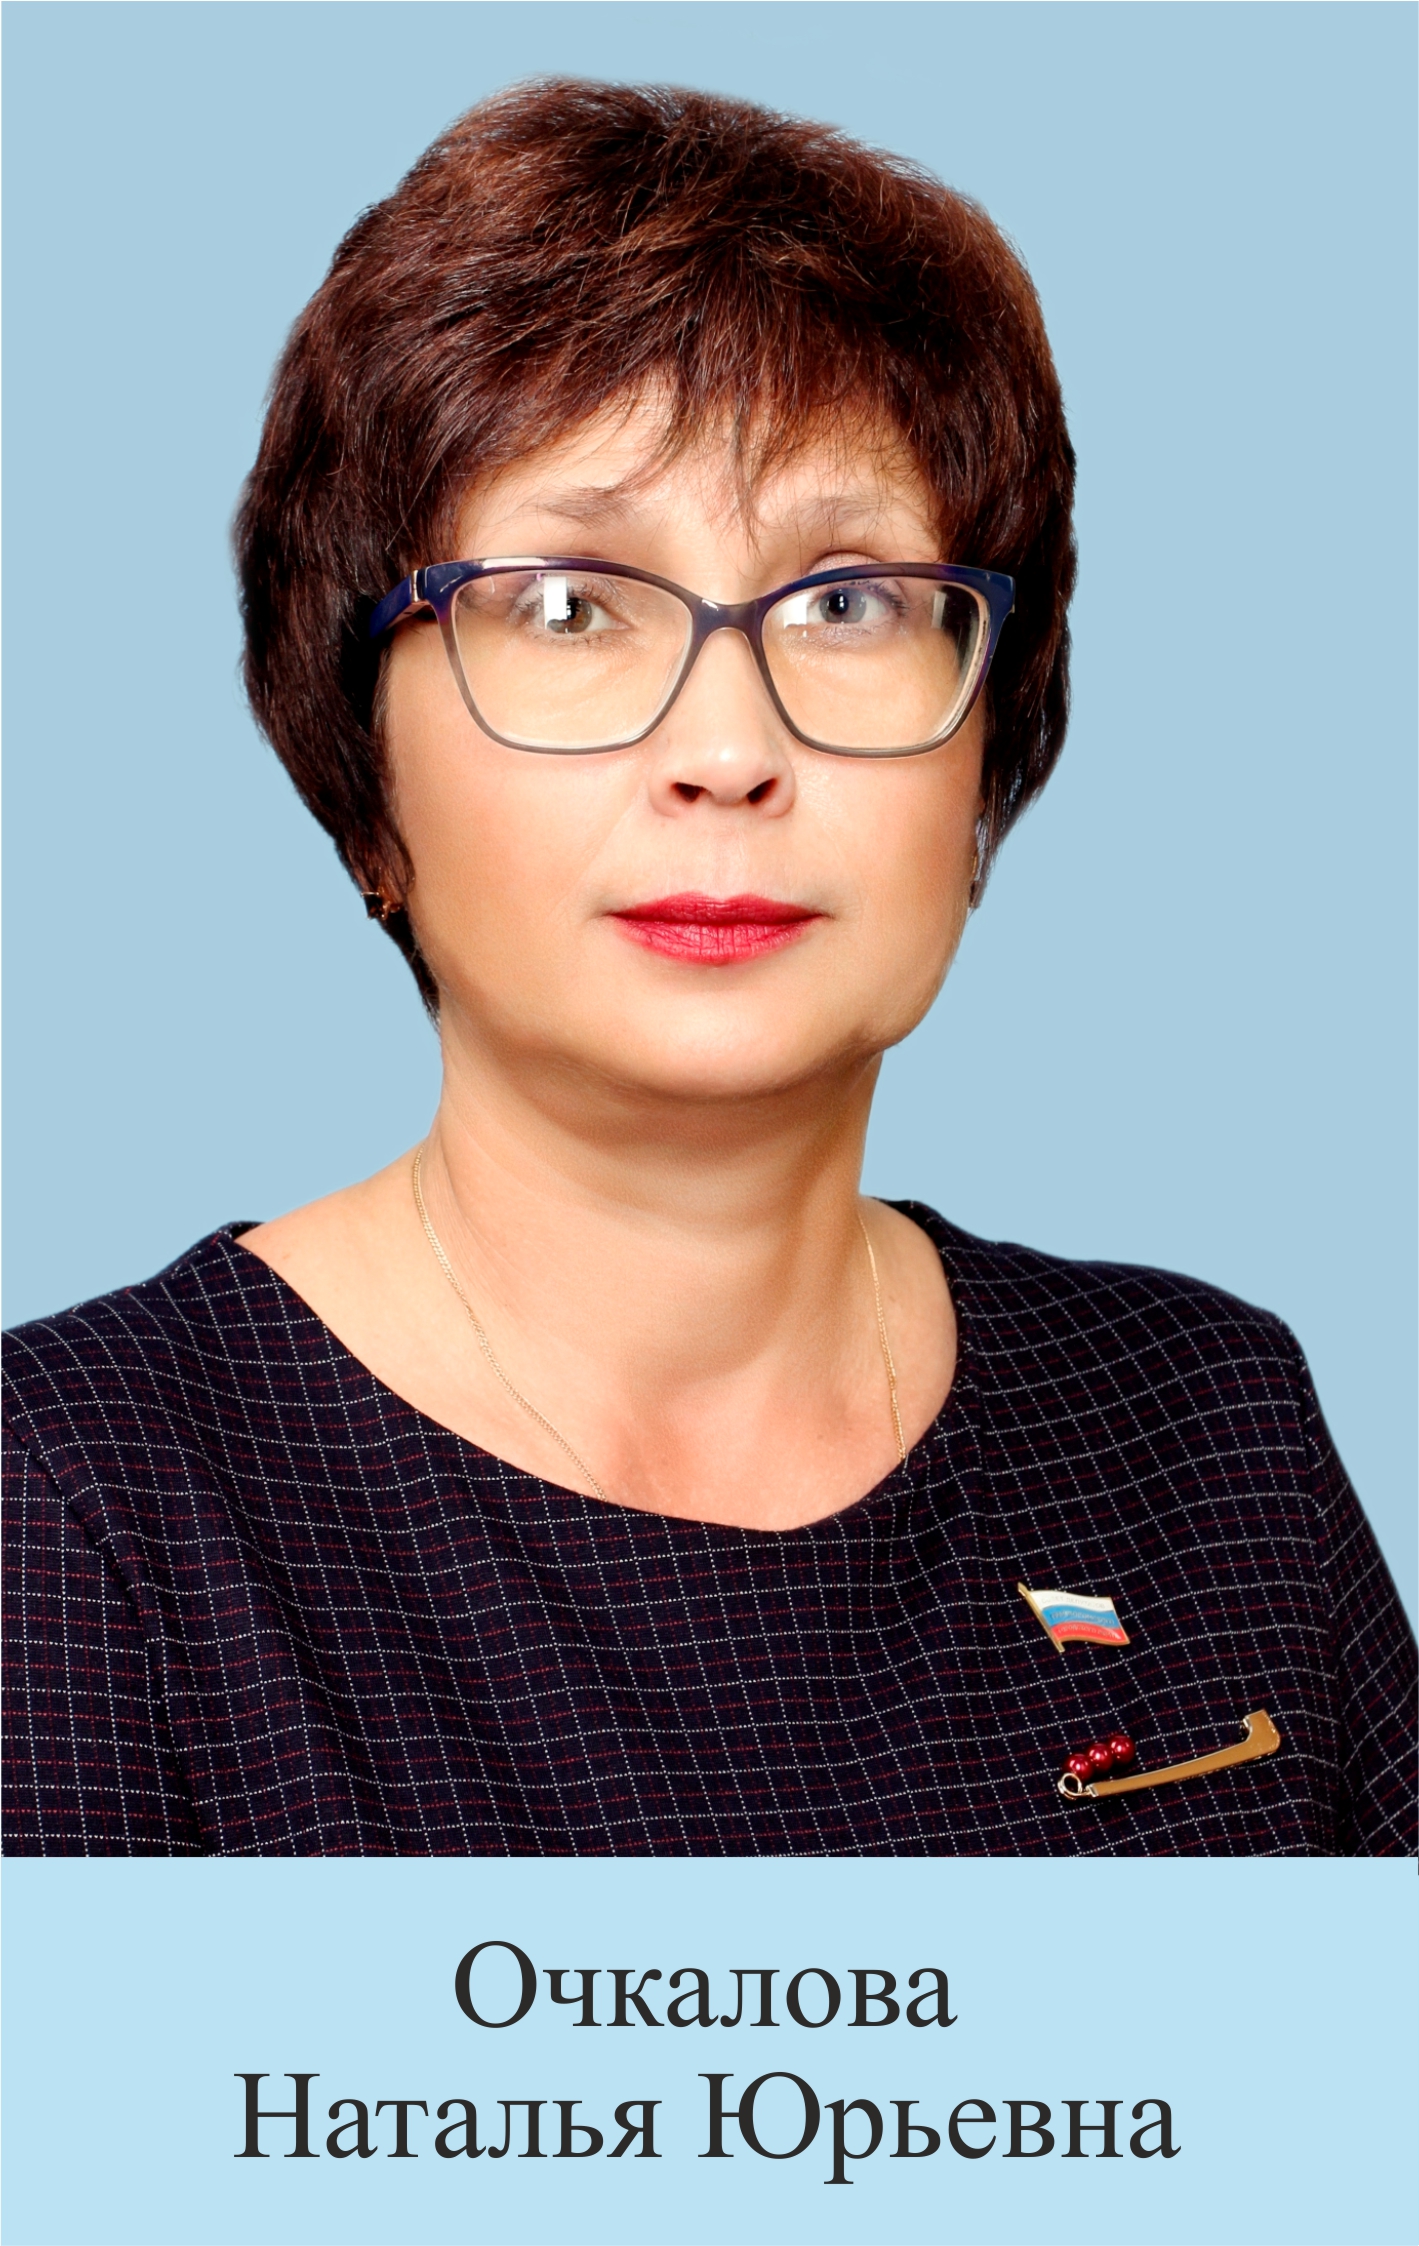 Очкалова Наталья Юрьевна.